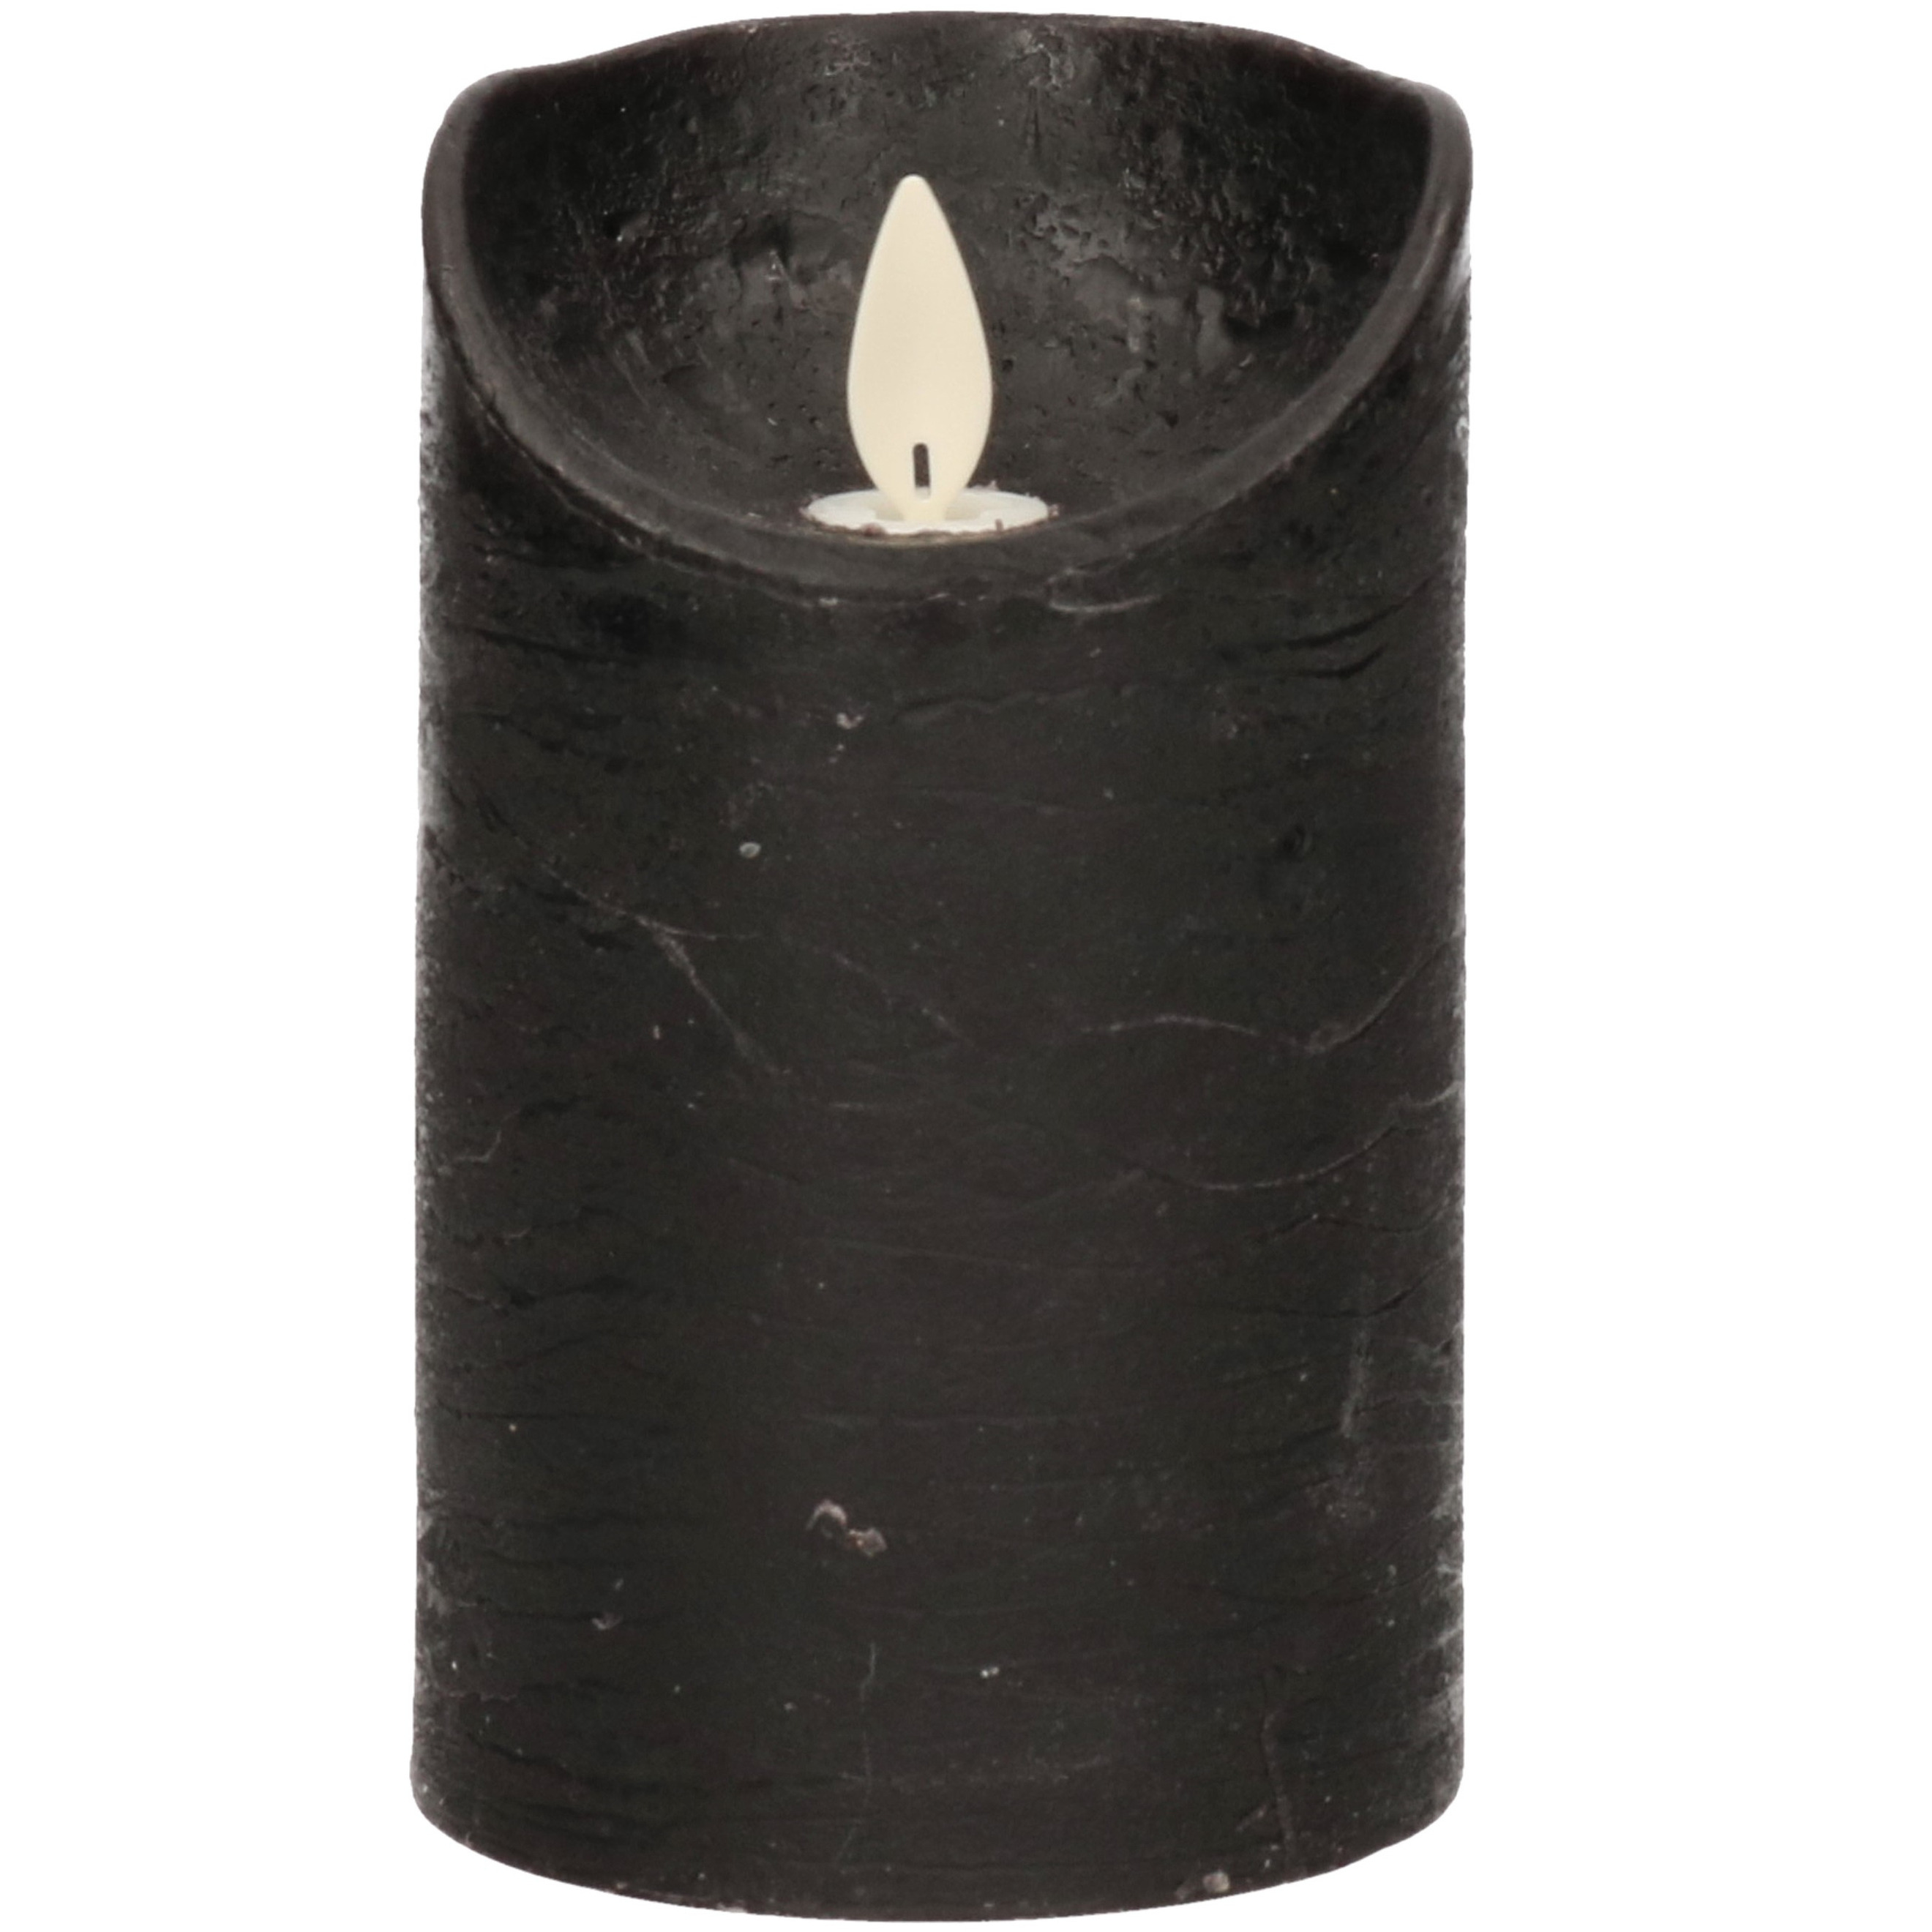 1x Zwarte LED kaarsen-stompkaarsen met bewegende vlam 12,5 cm